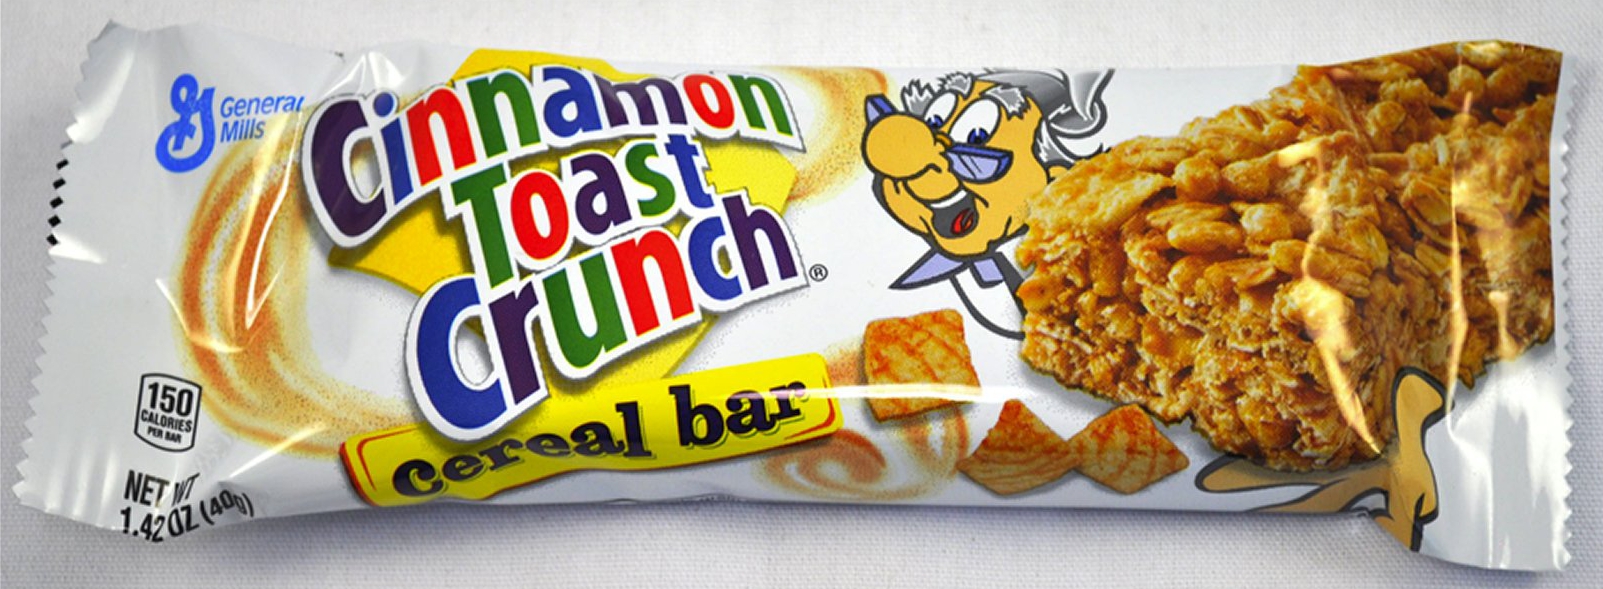 cinnamon toast crunch cereal bar